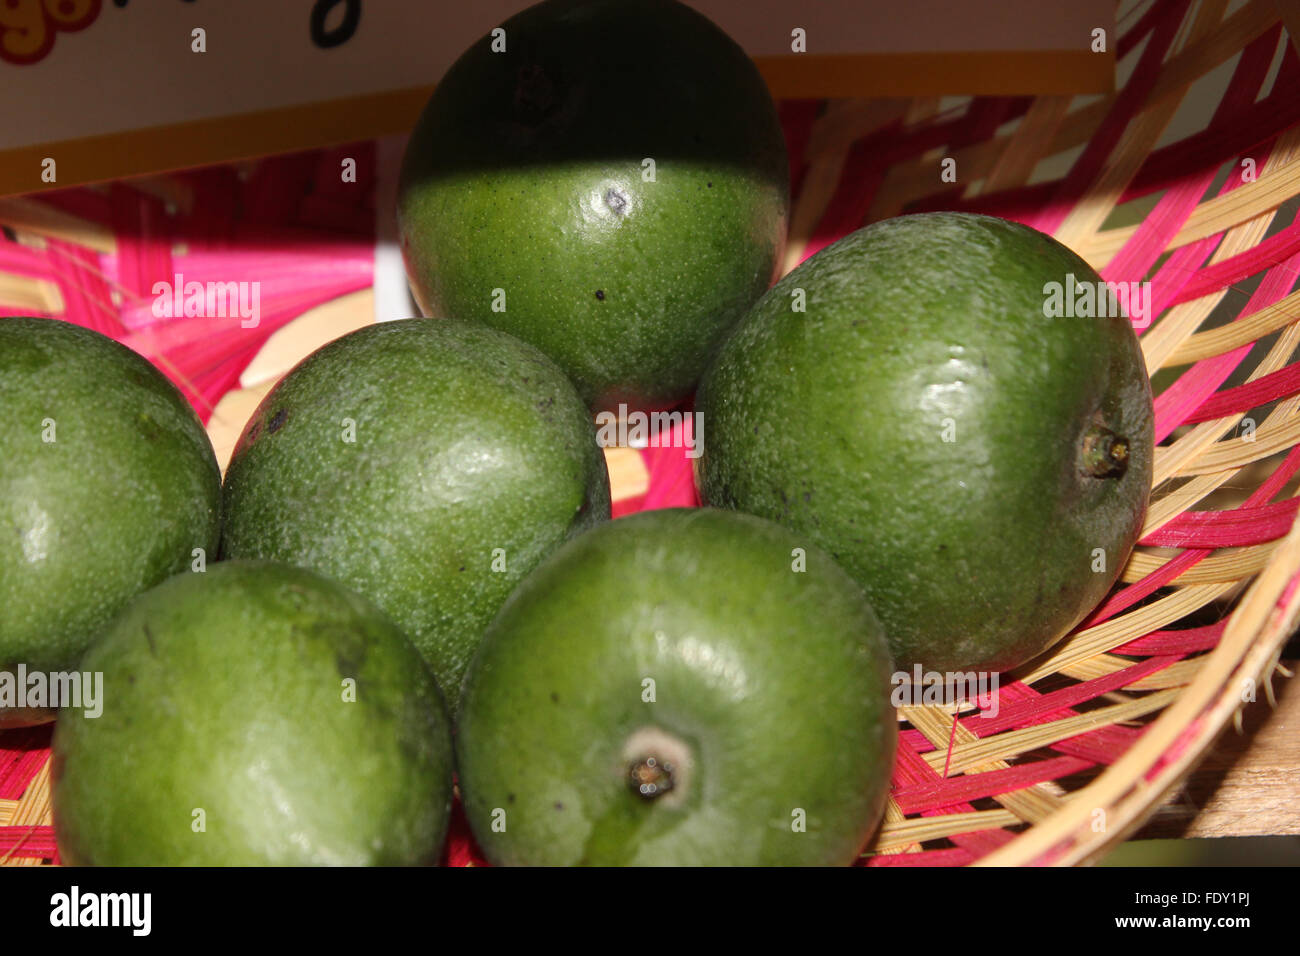 Mangifera odorata,  kuwini mango, fragrant mango, tree with fragrant flowers, rounded fruits, orange fruits, fragrant when ripe Stock Photo